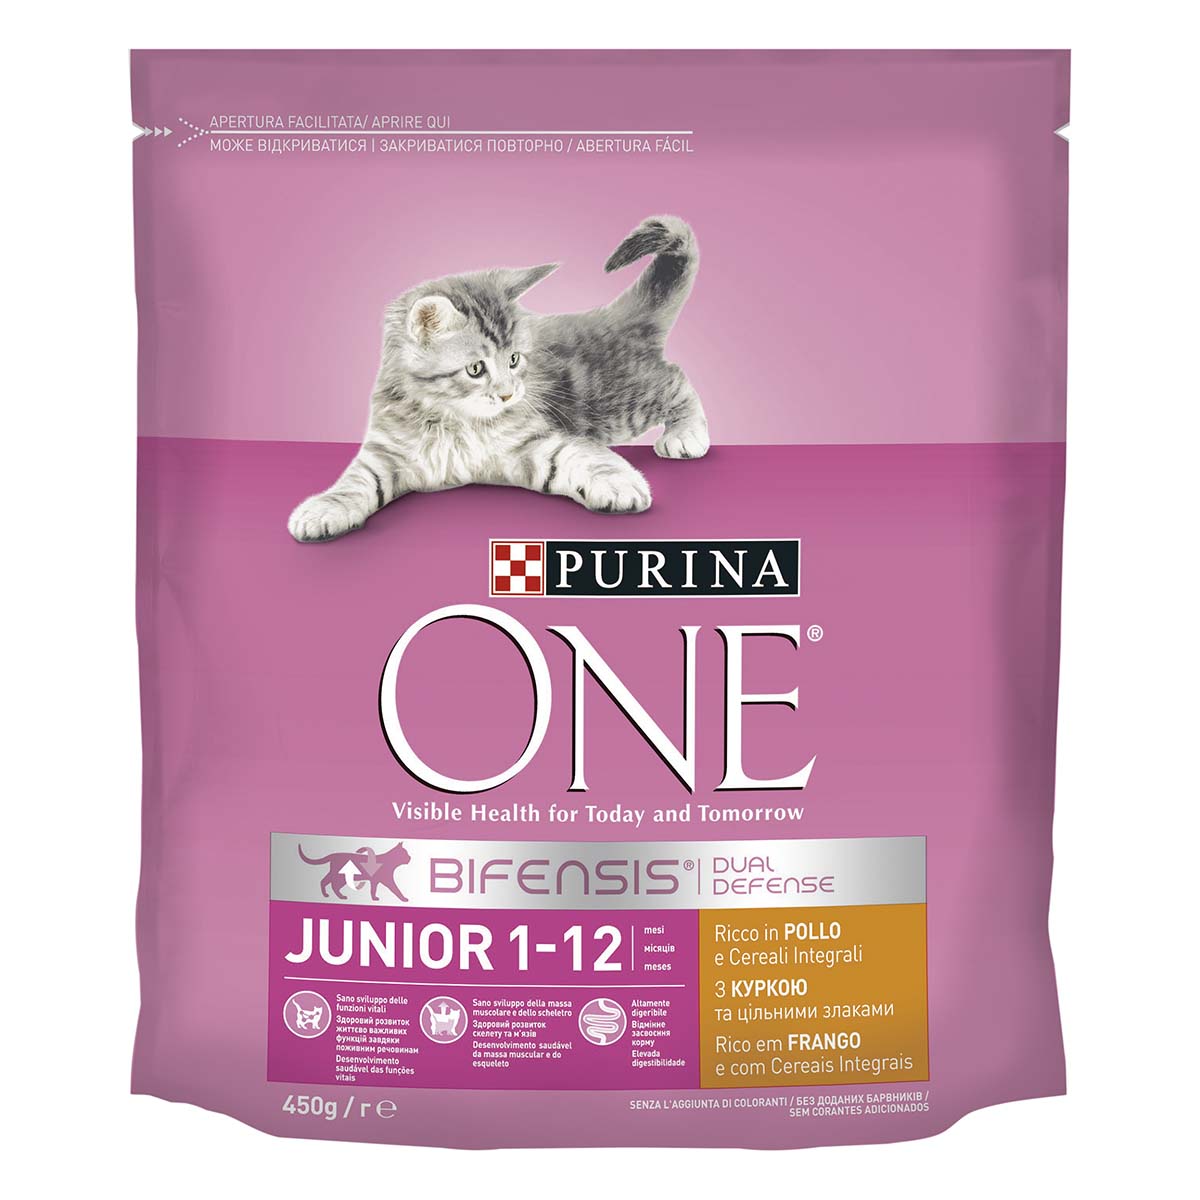 Purina ONE Junior - Pollo & Cereali Integrali Bifensis, 450 g